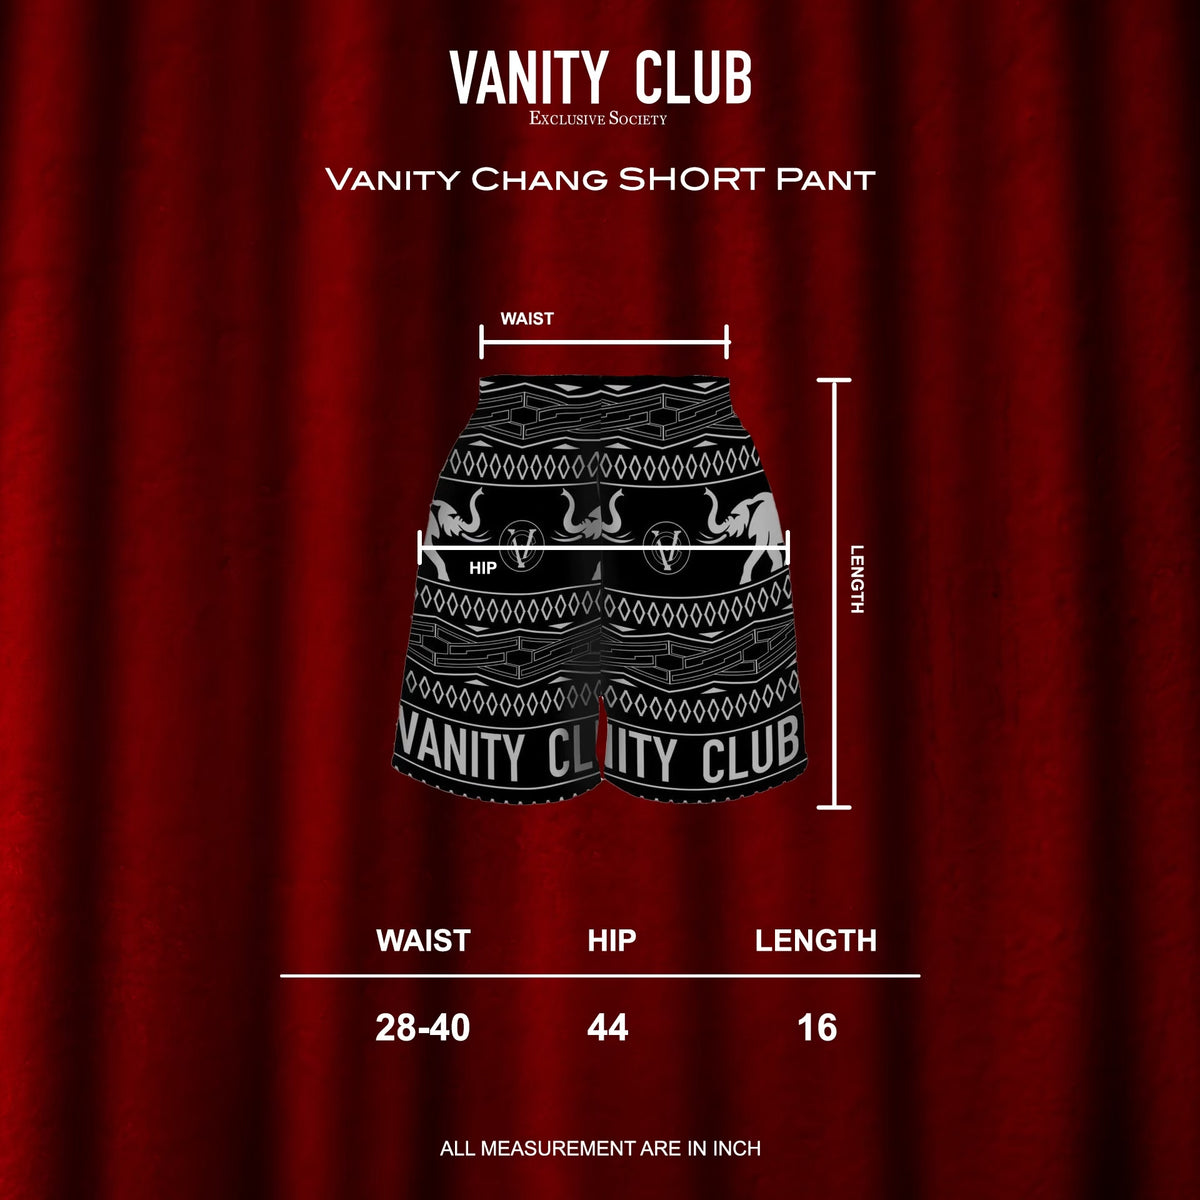 Vanity Chang Short Pant